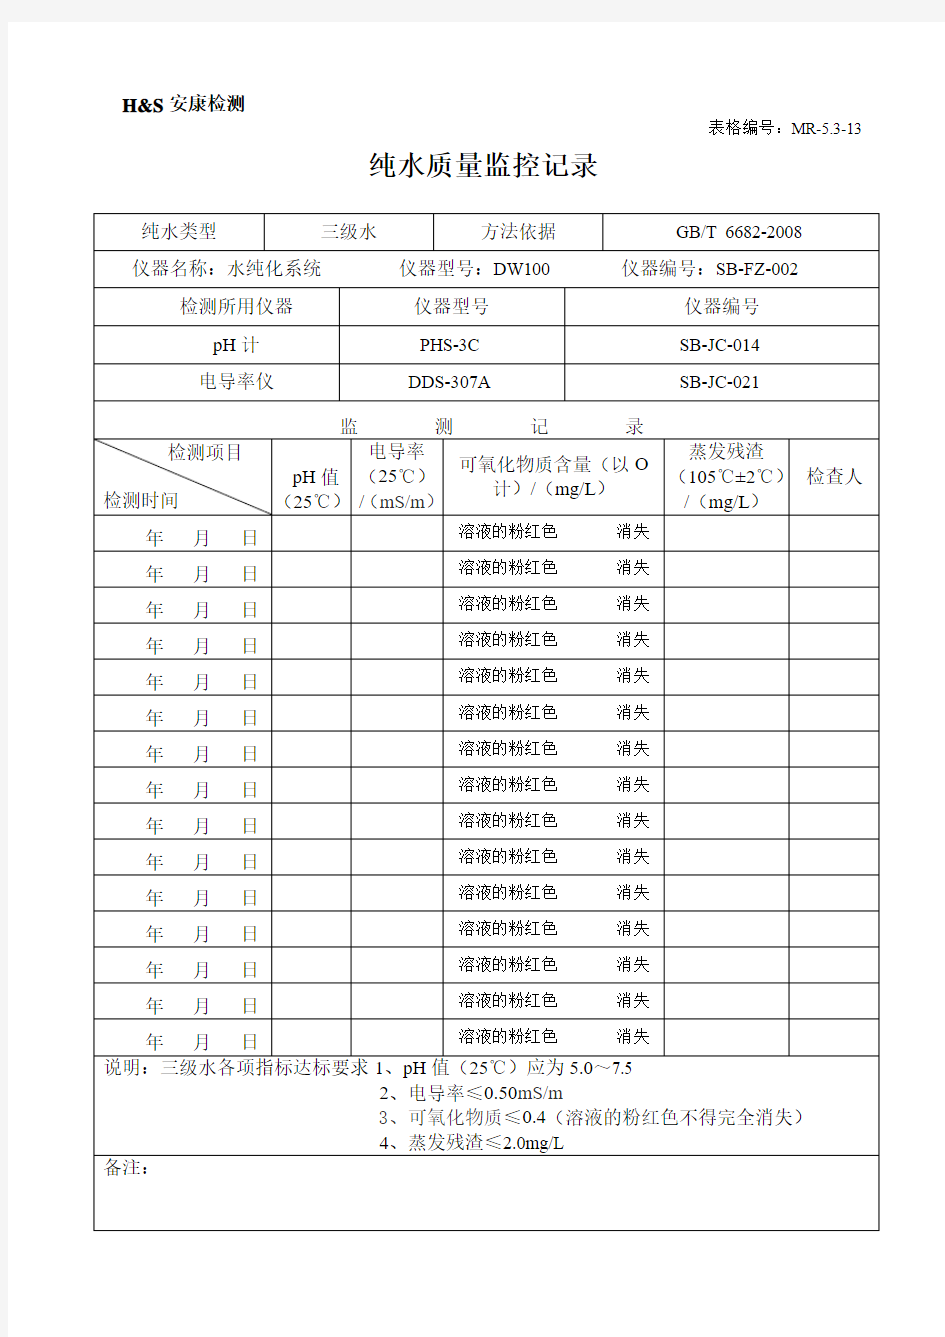 MR-5.3-13纯水质量监控检查记录(2014.8.4起用)(3)